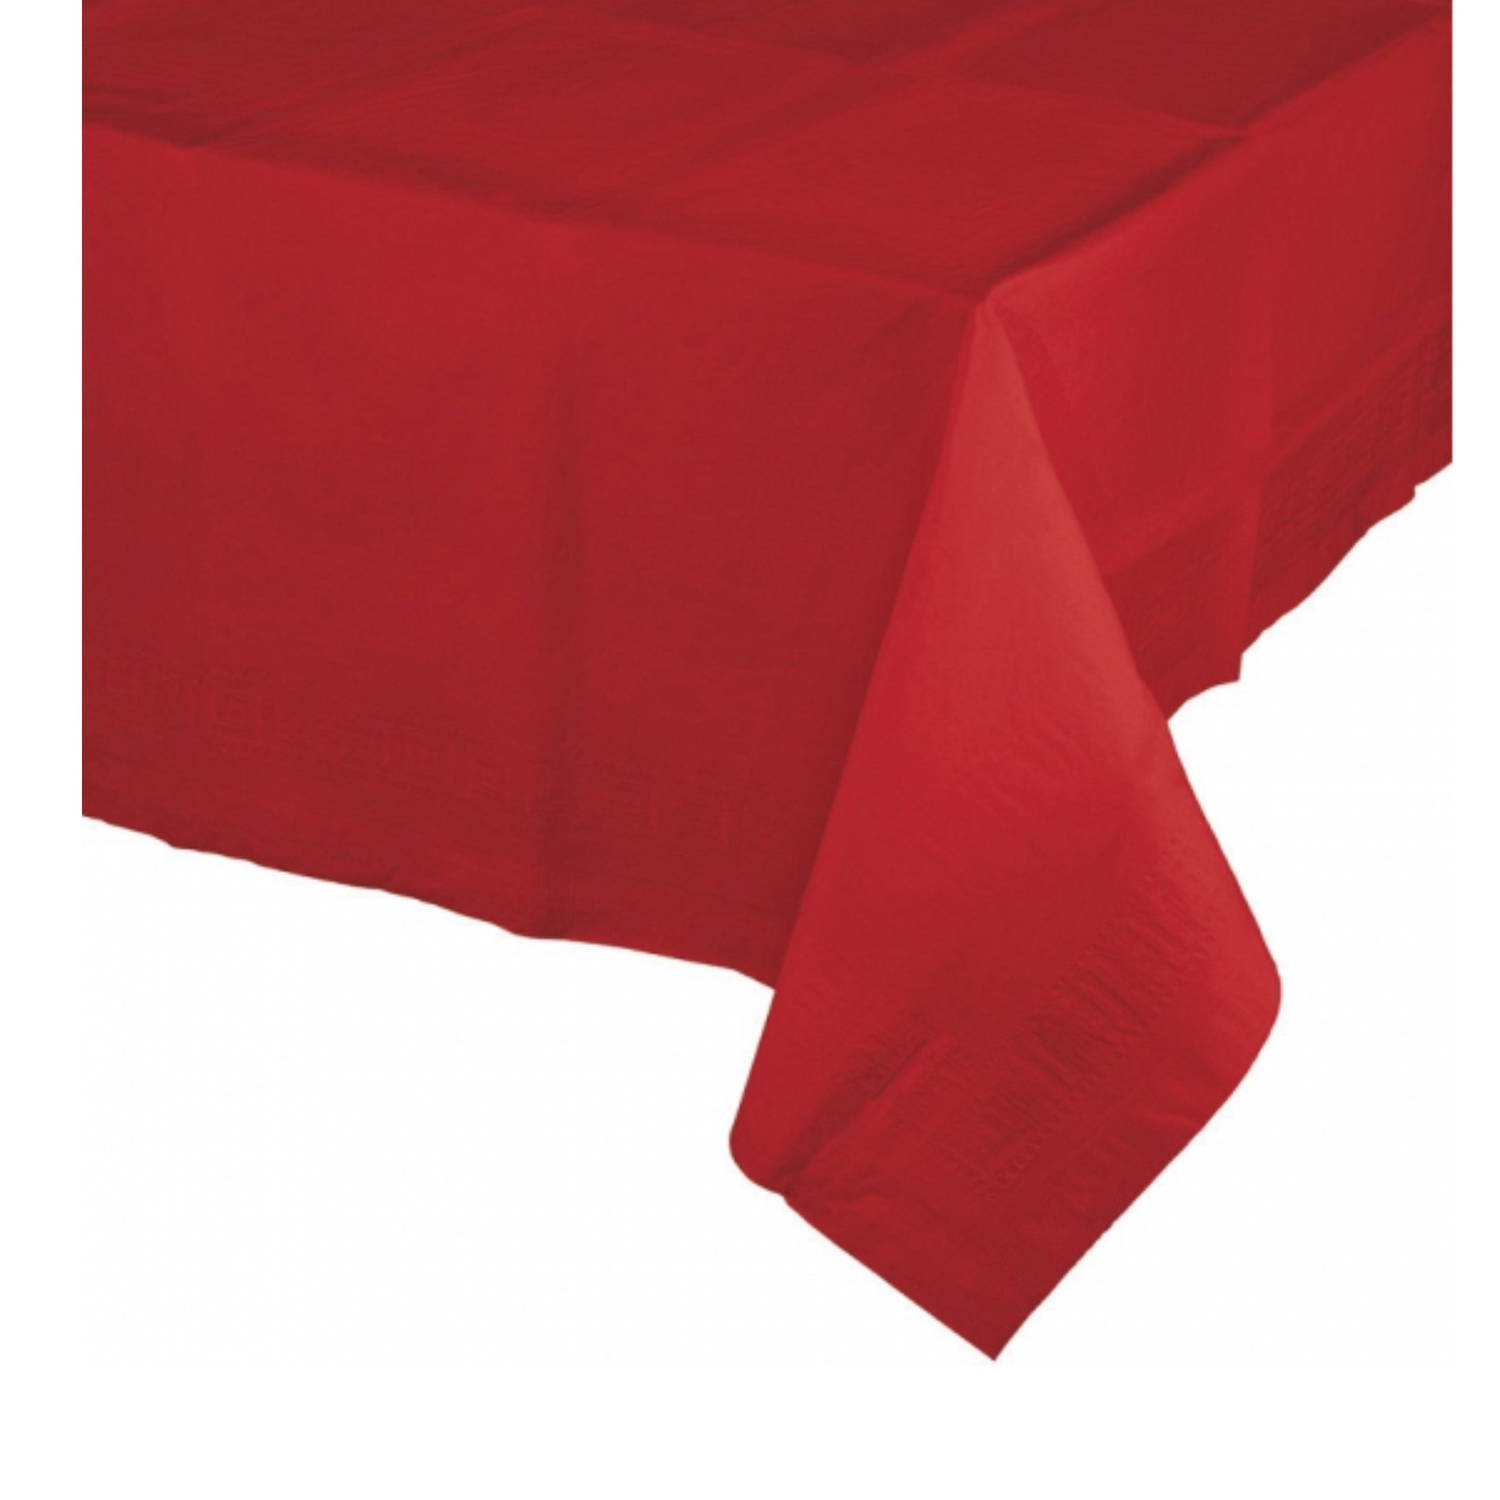 Transistor linnen Onleesbaar Tafelkleed rood 274 x 137 cm - Feesttafelkleden | Blokker